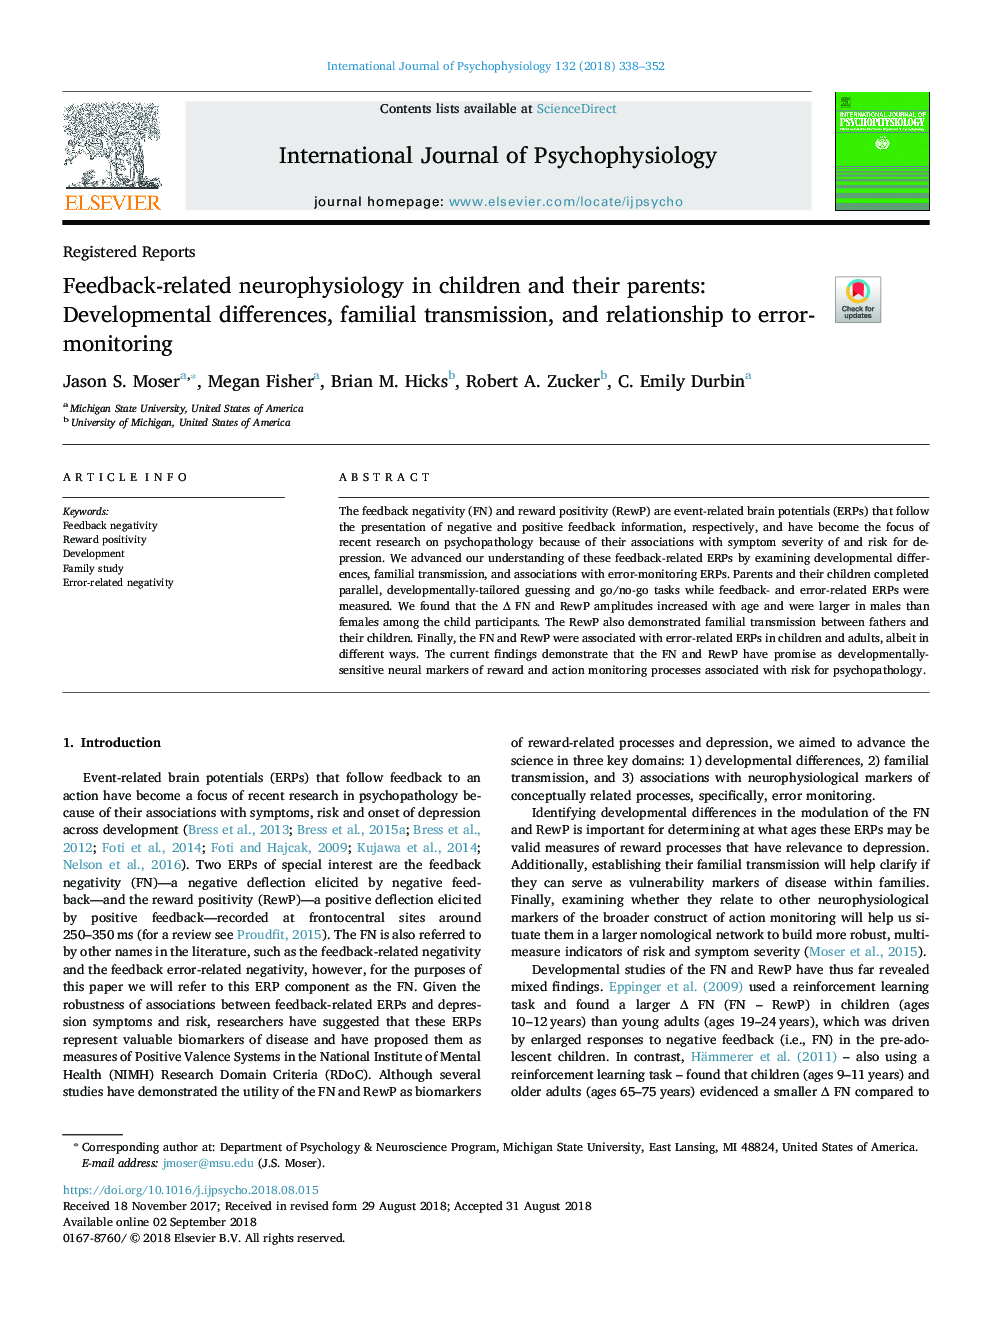 نوروفیزیولوژی مربوط به بازخورد در کودکان و والدین آنها: تفاوت های رشد، انتقال خانوادگی و ارتباط با نظارت بر خطا